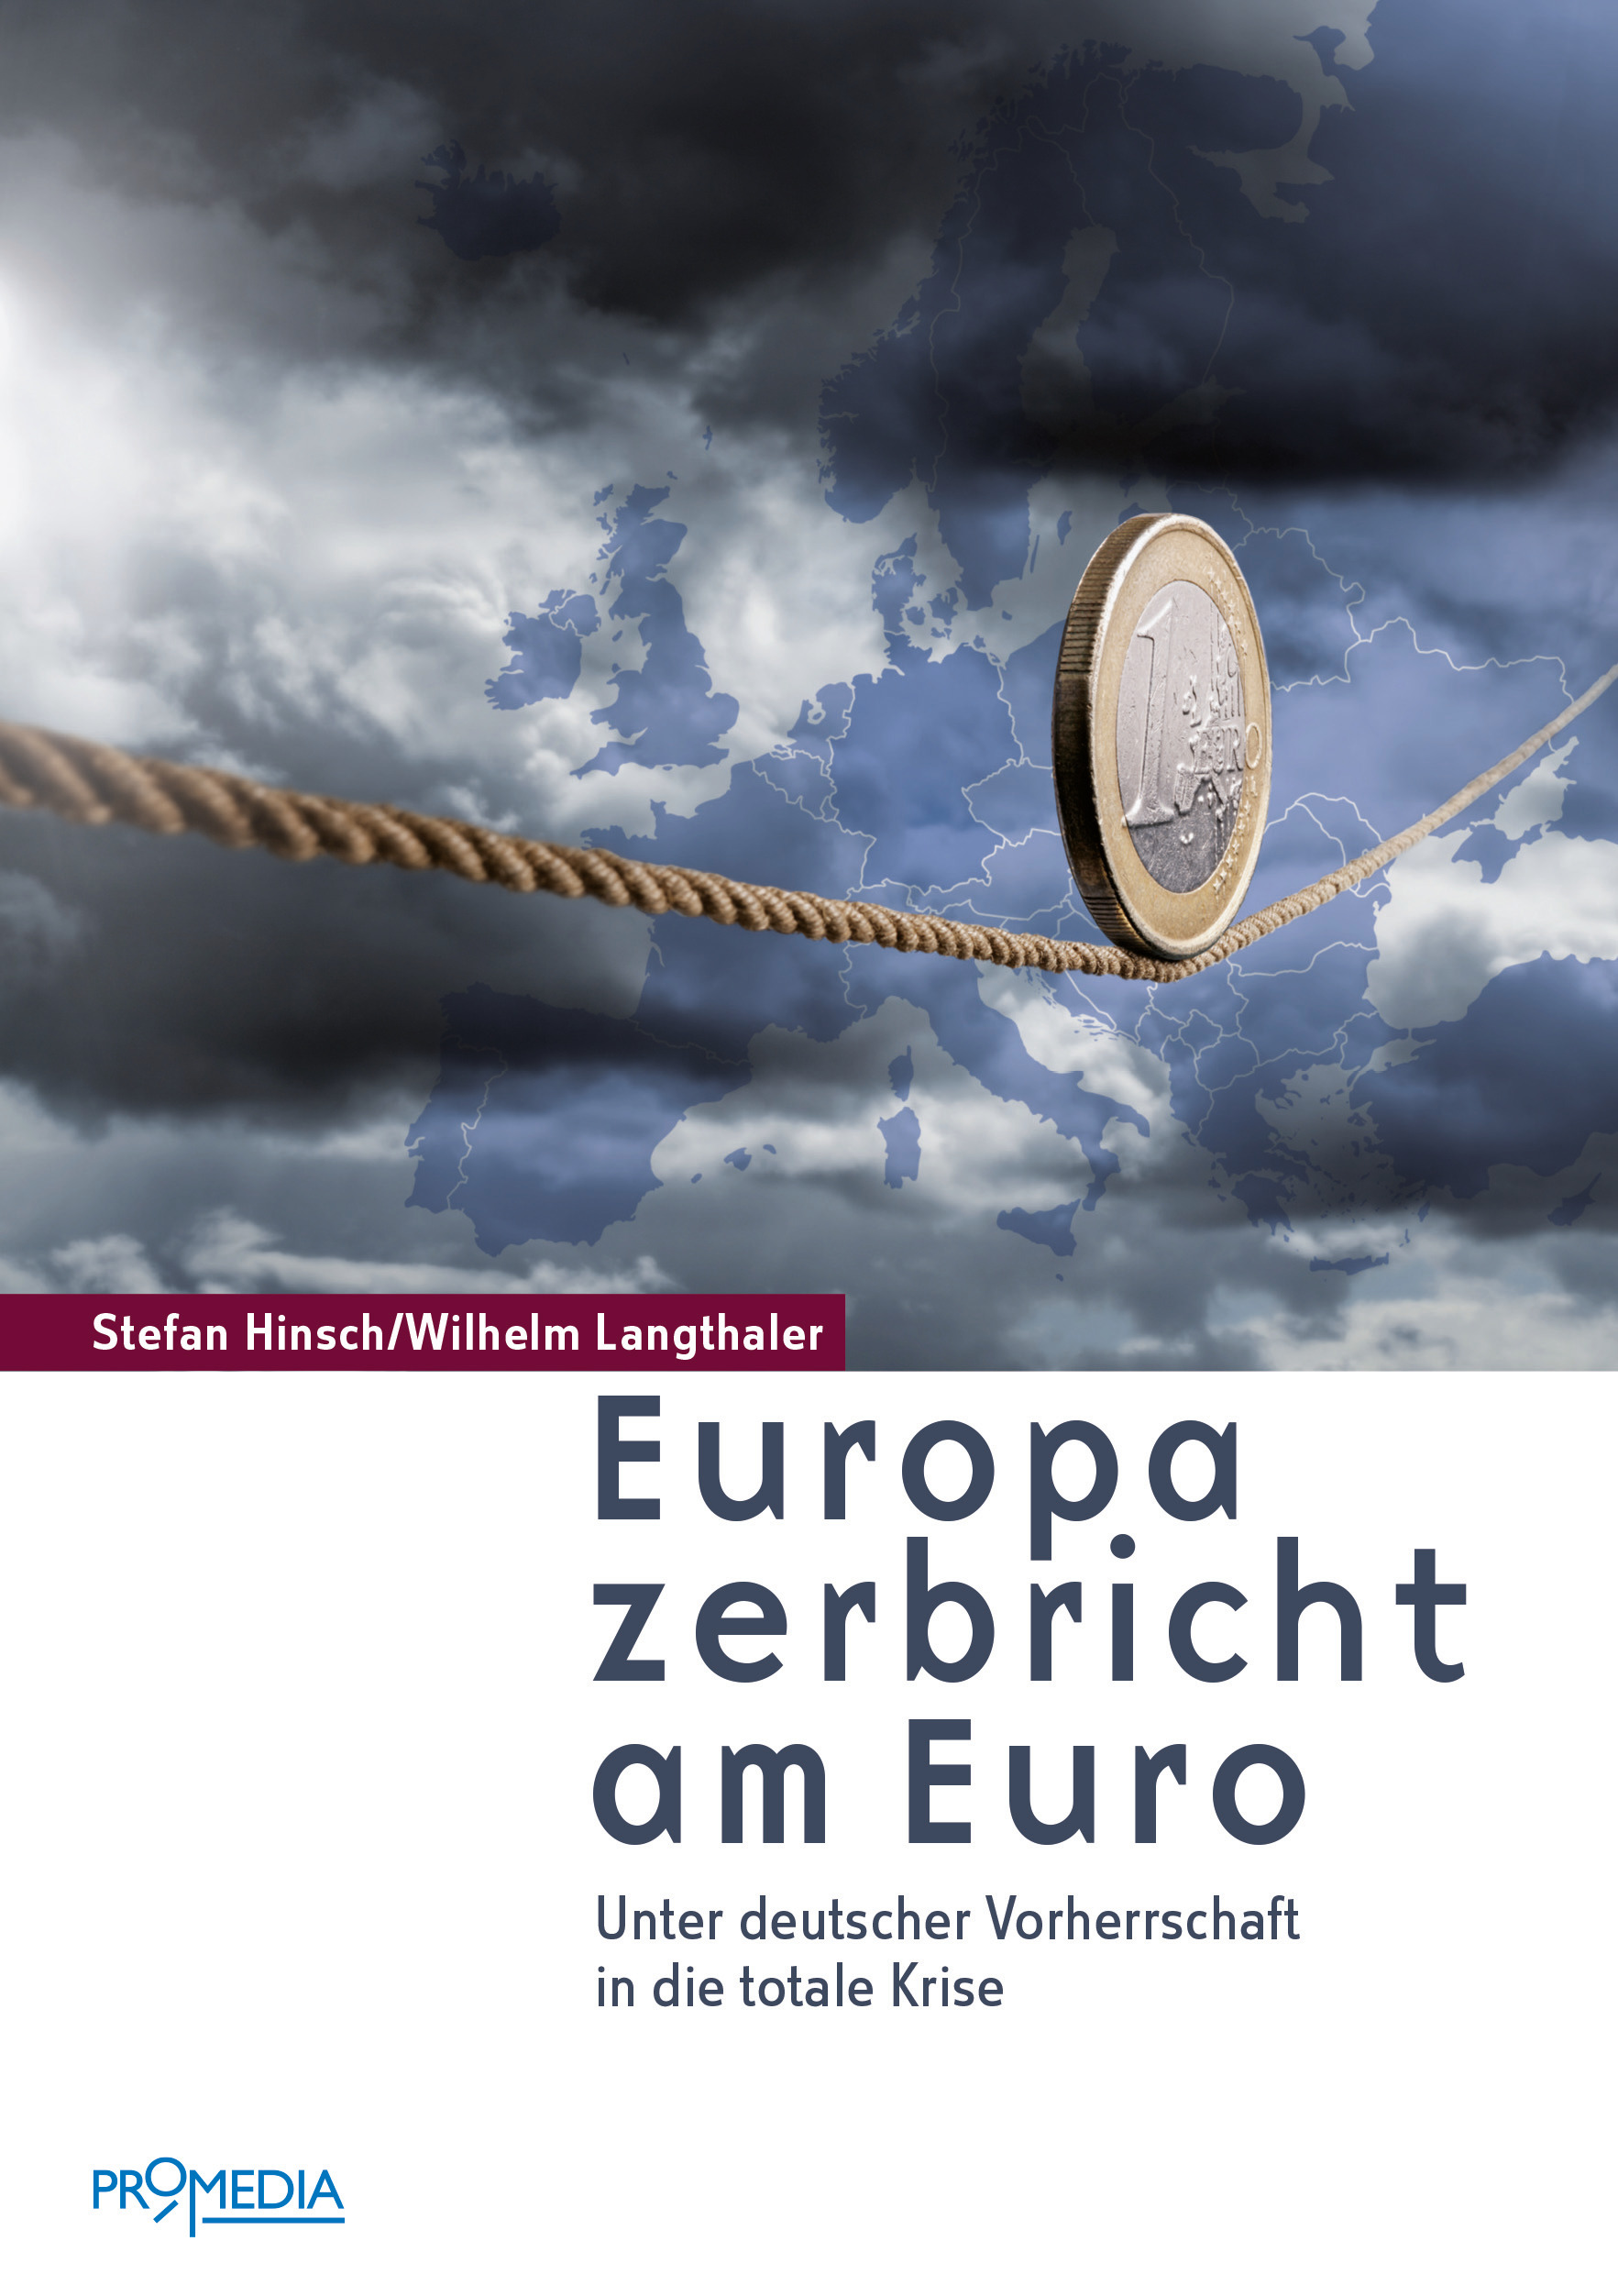 [Cover] Europa zerbricht am Euro